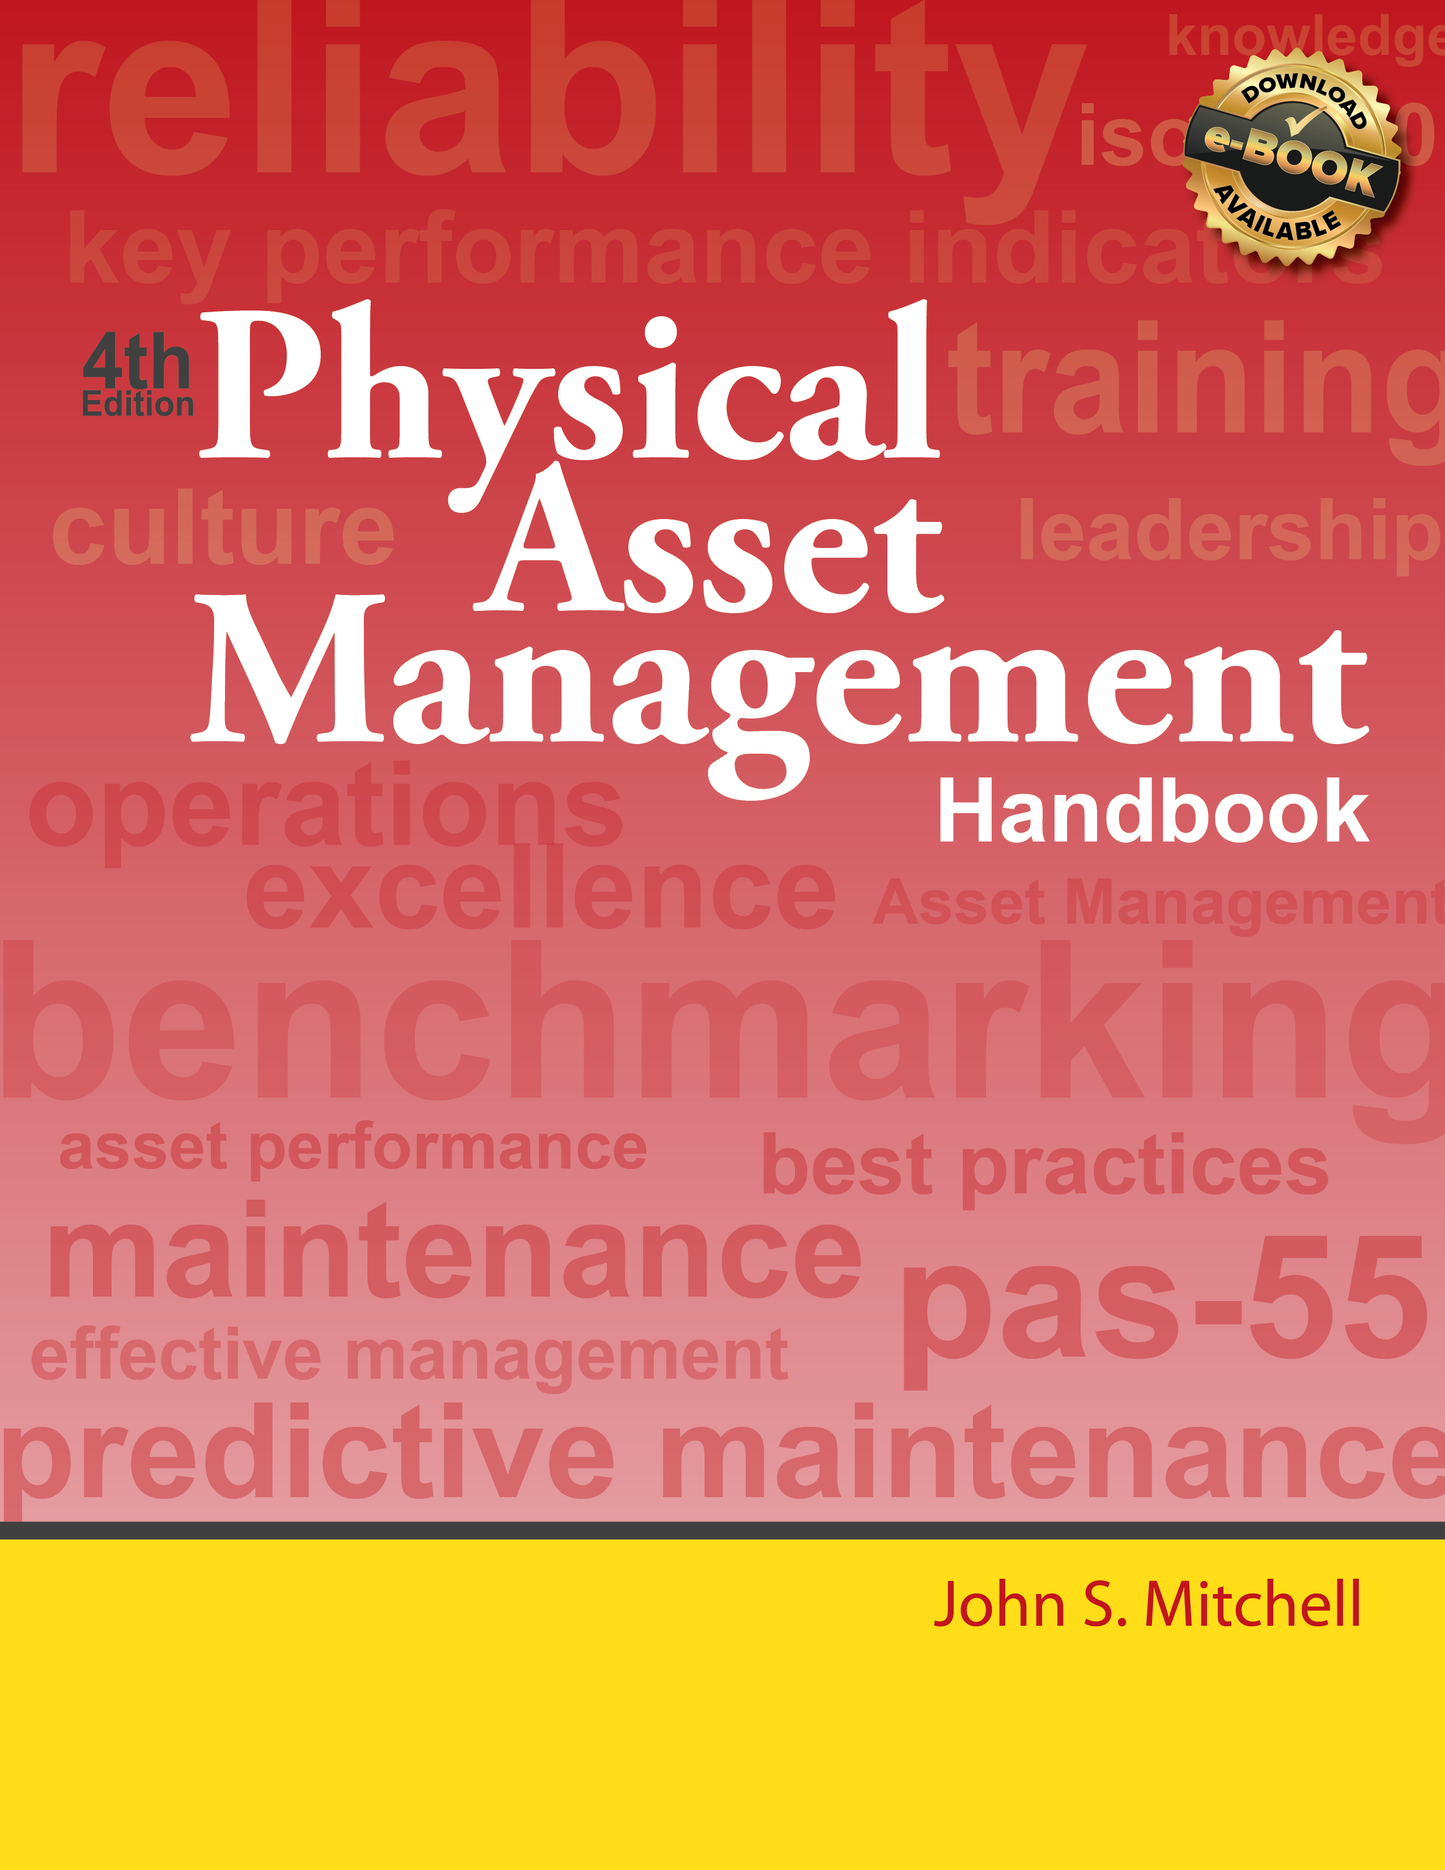 Physical Asset Management Handbook - Digital Version - E-Book